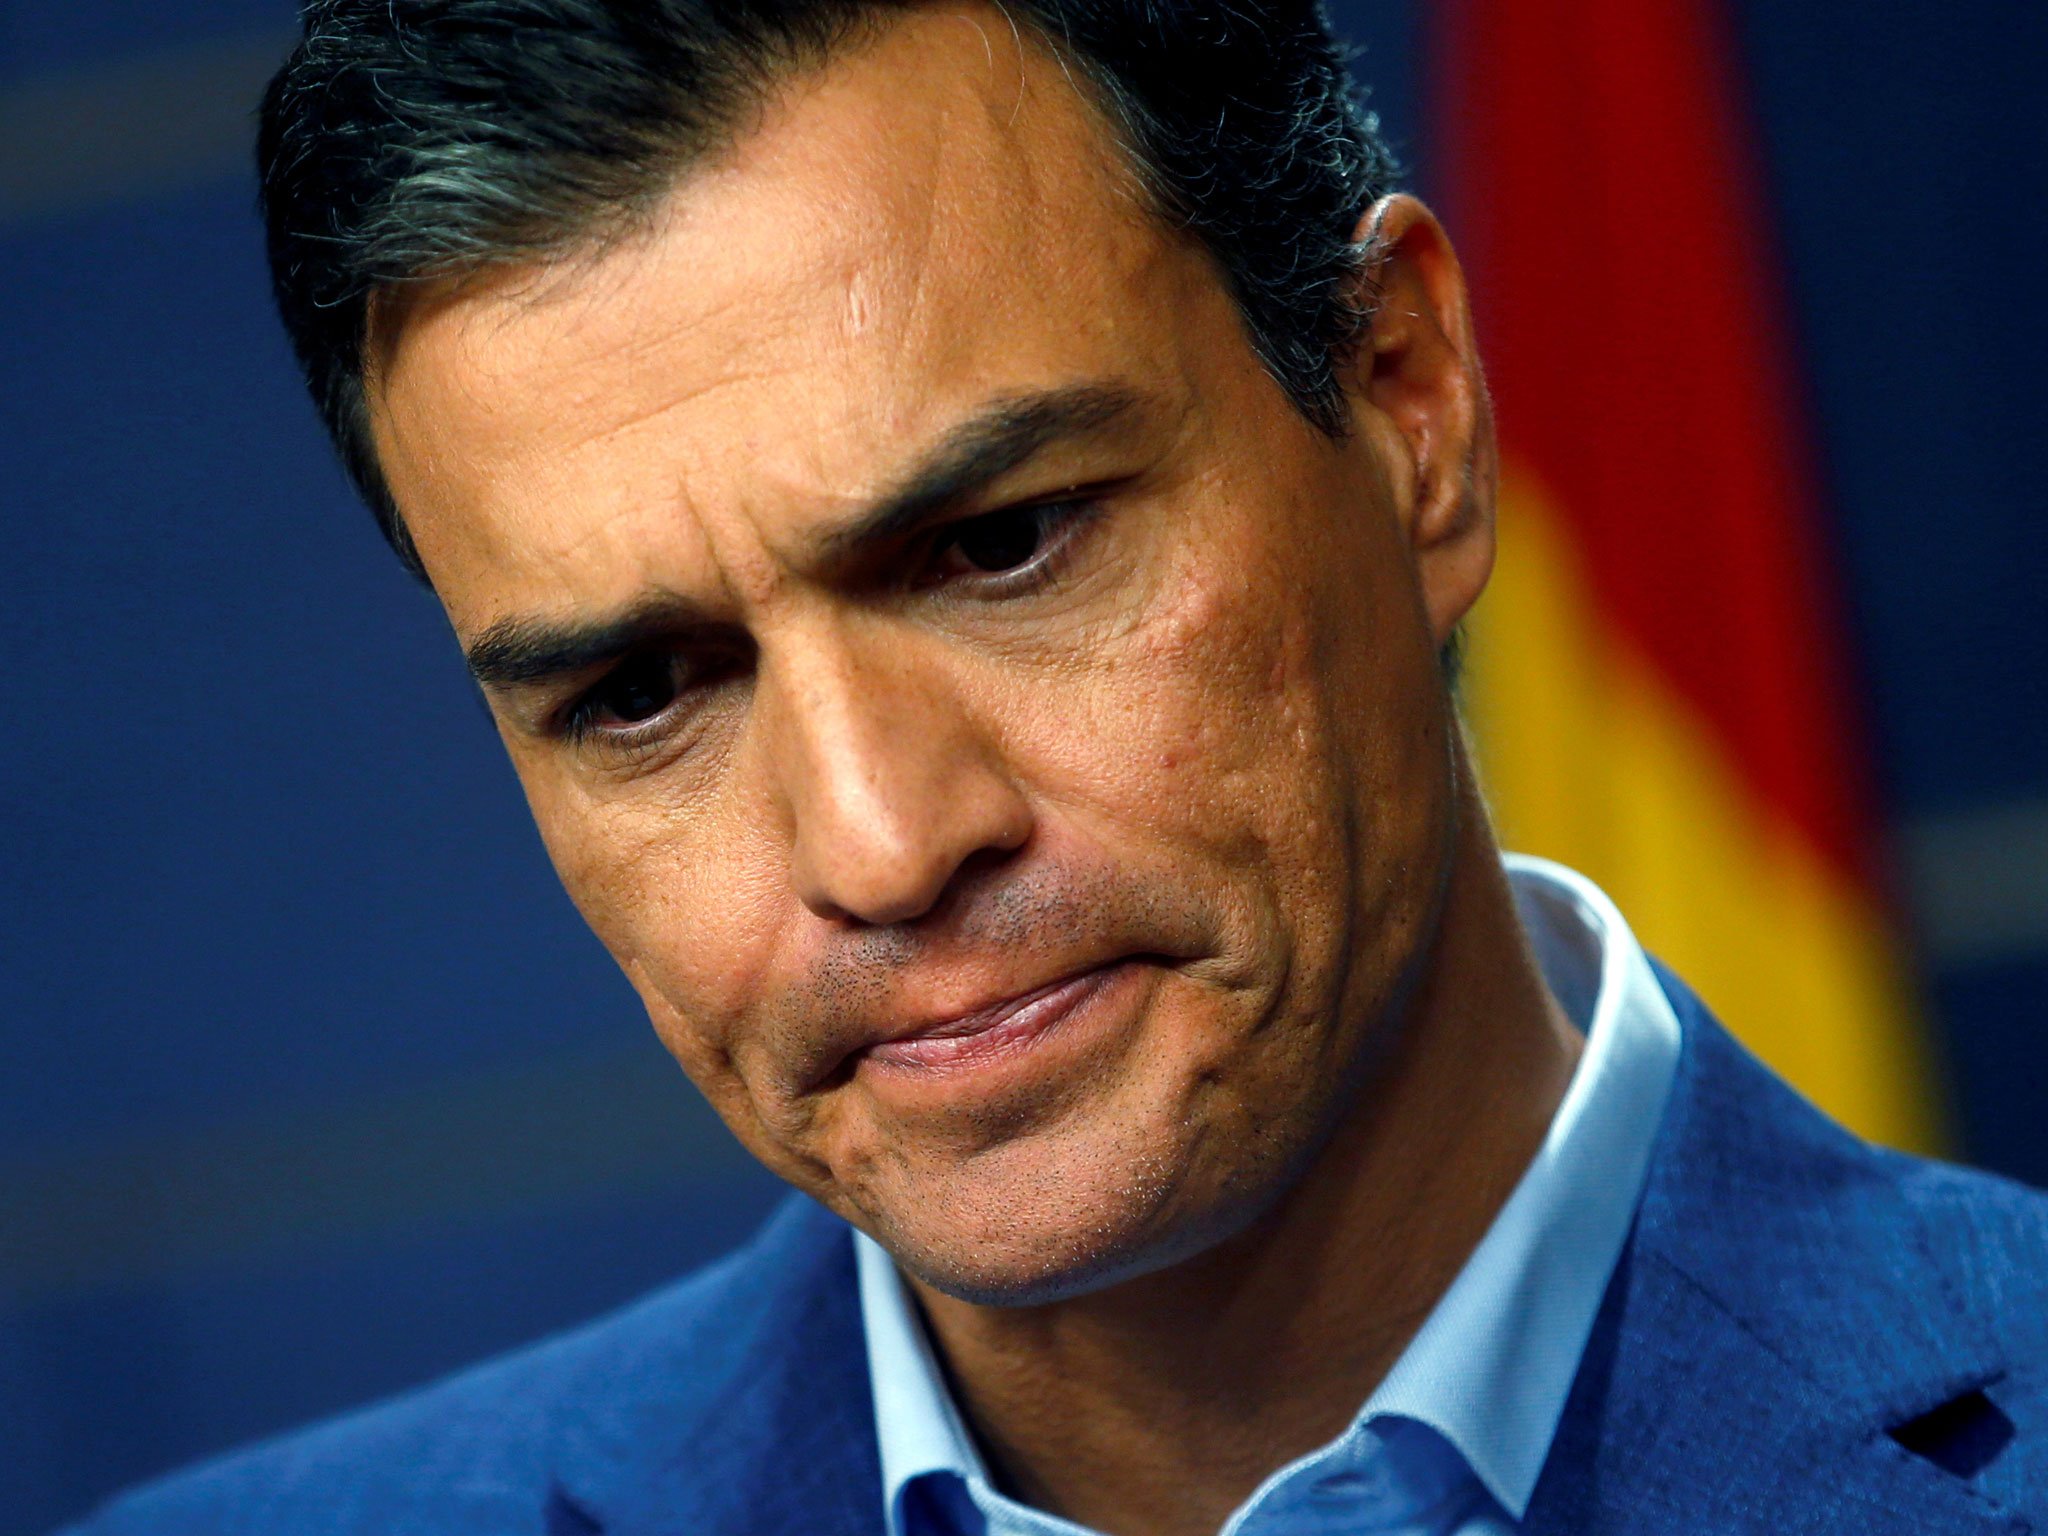 Πολιτική κρίση στην Ισπανία – Σάντσεθ: “Διάλυση της Βουλής και προκήρυξη πρόωρων εκλογών”